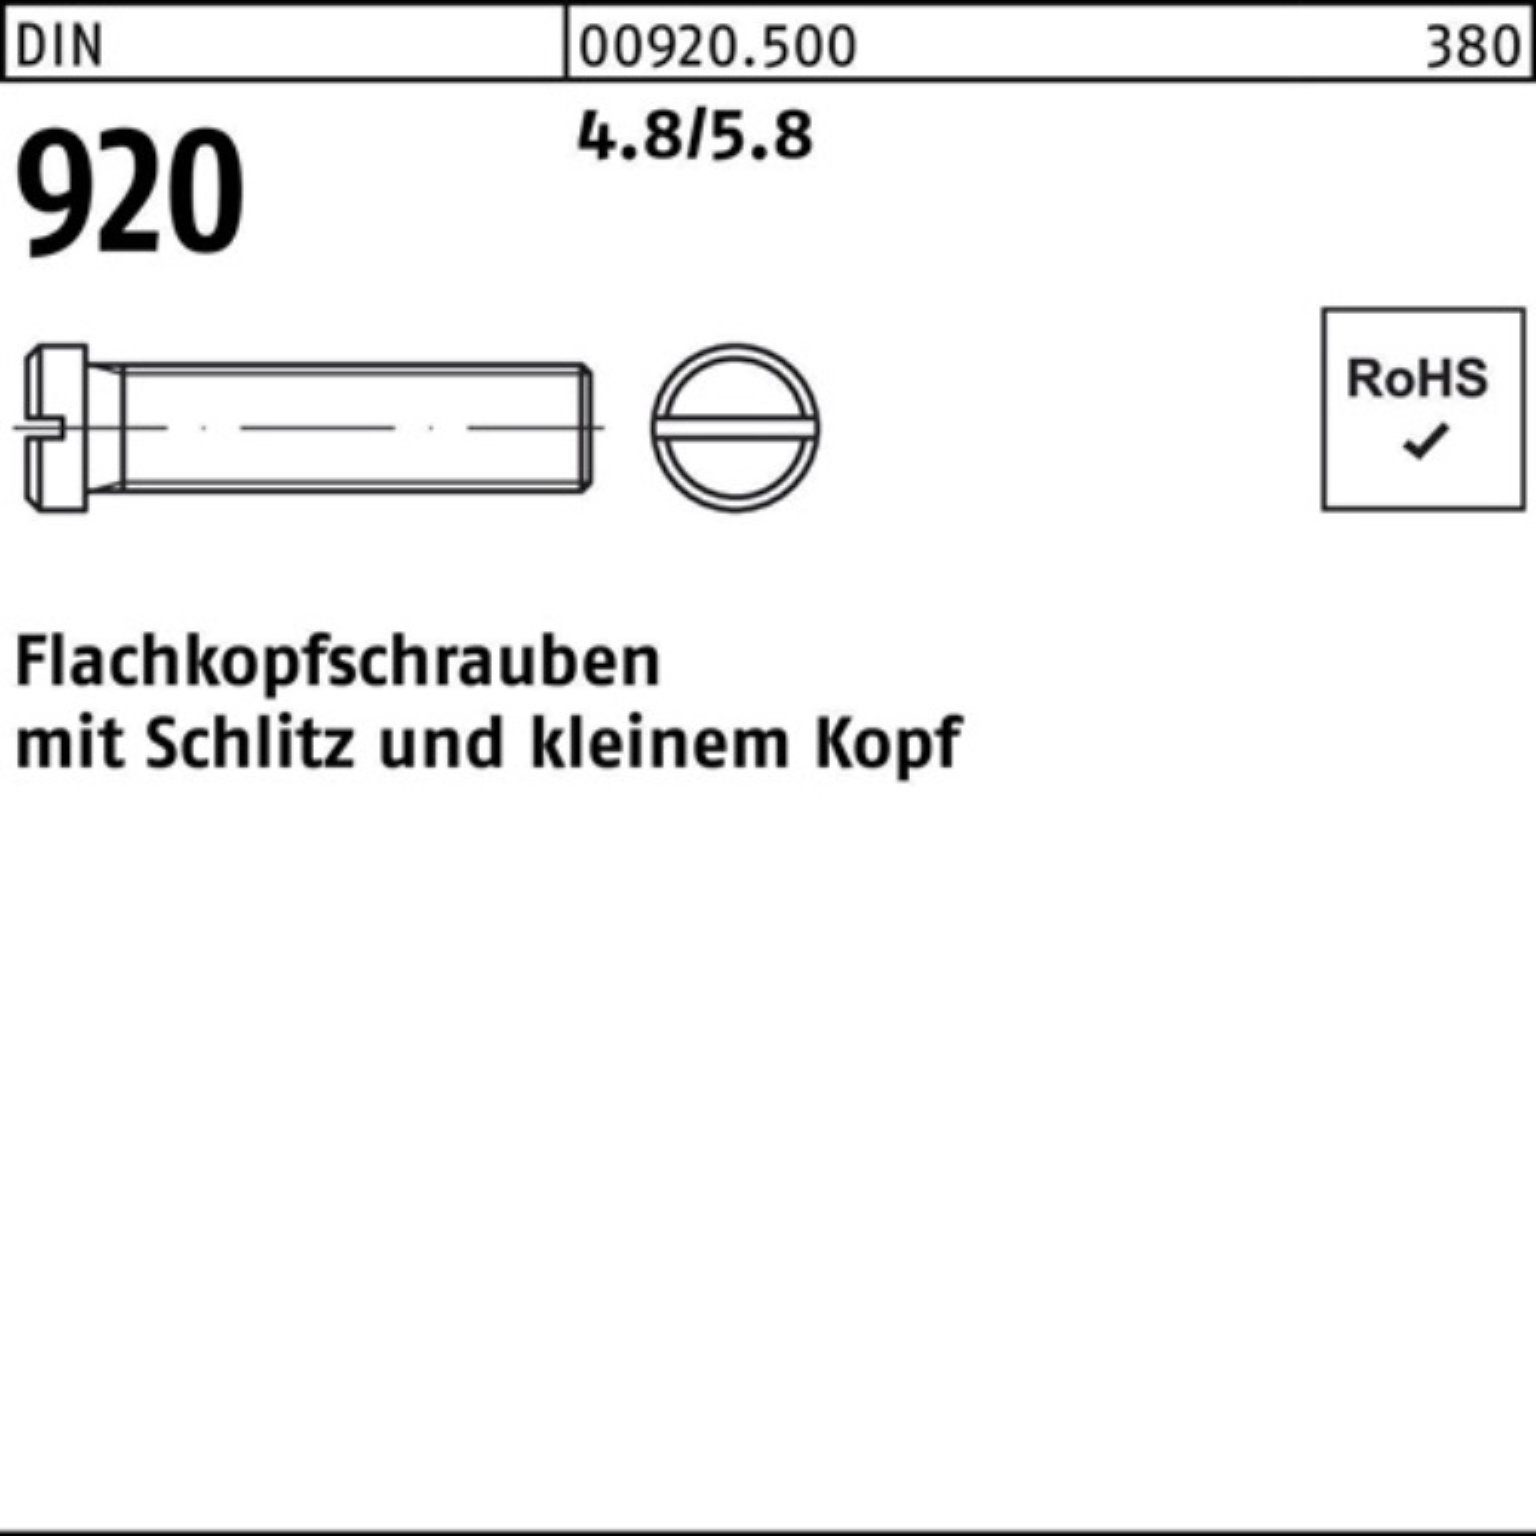 Reyher M3x 100 DIN Schlitz Stück 100er Flachkopfschraube 920 Schraube 4.8/5.8 4 Pack